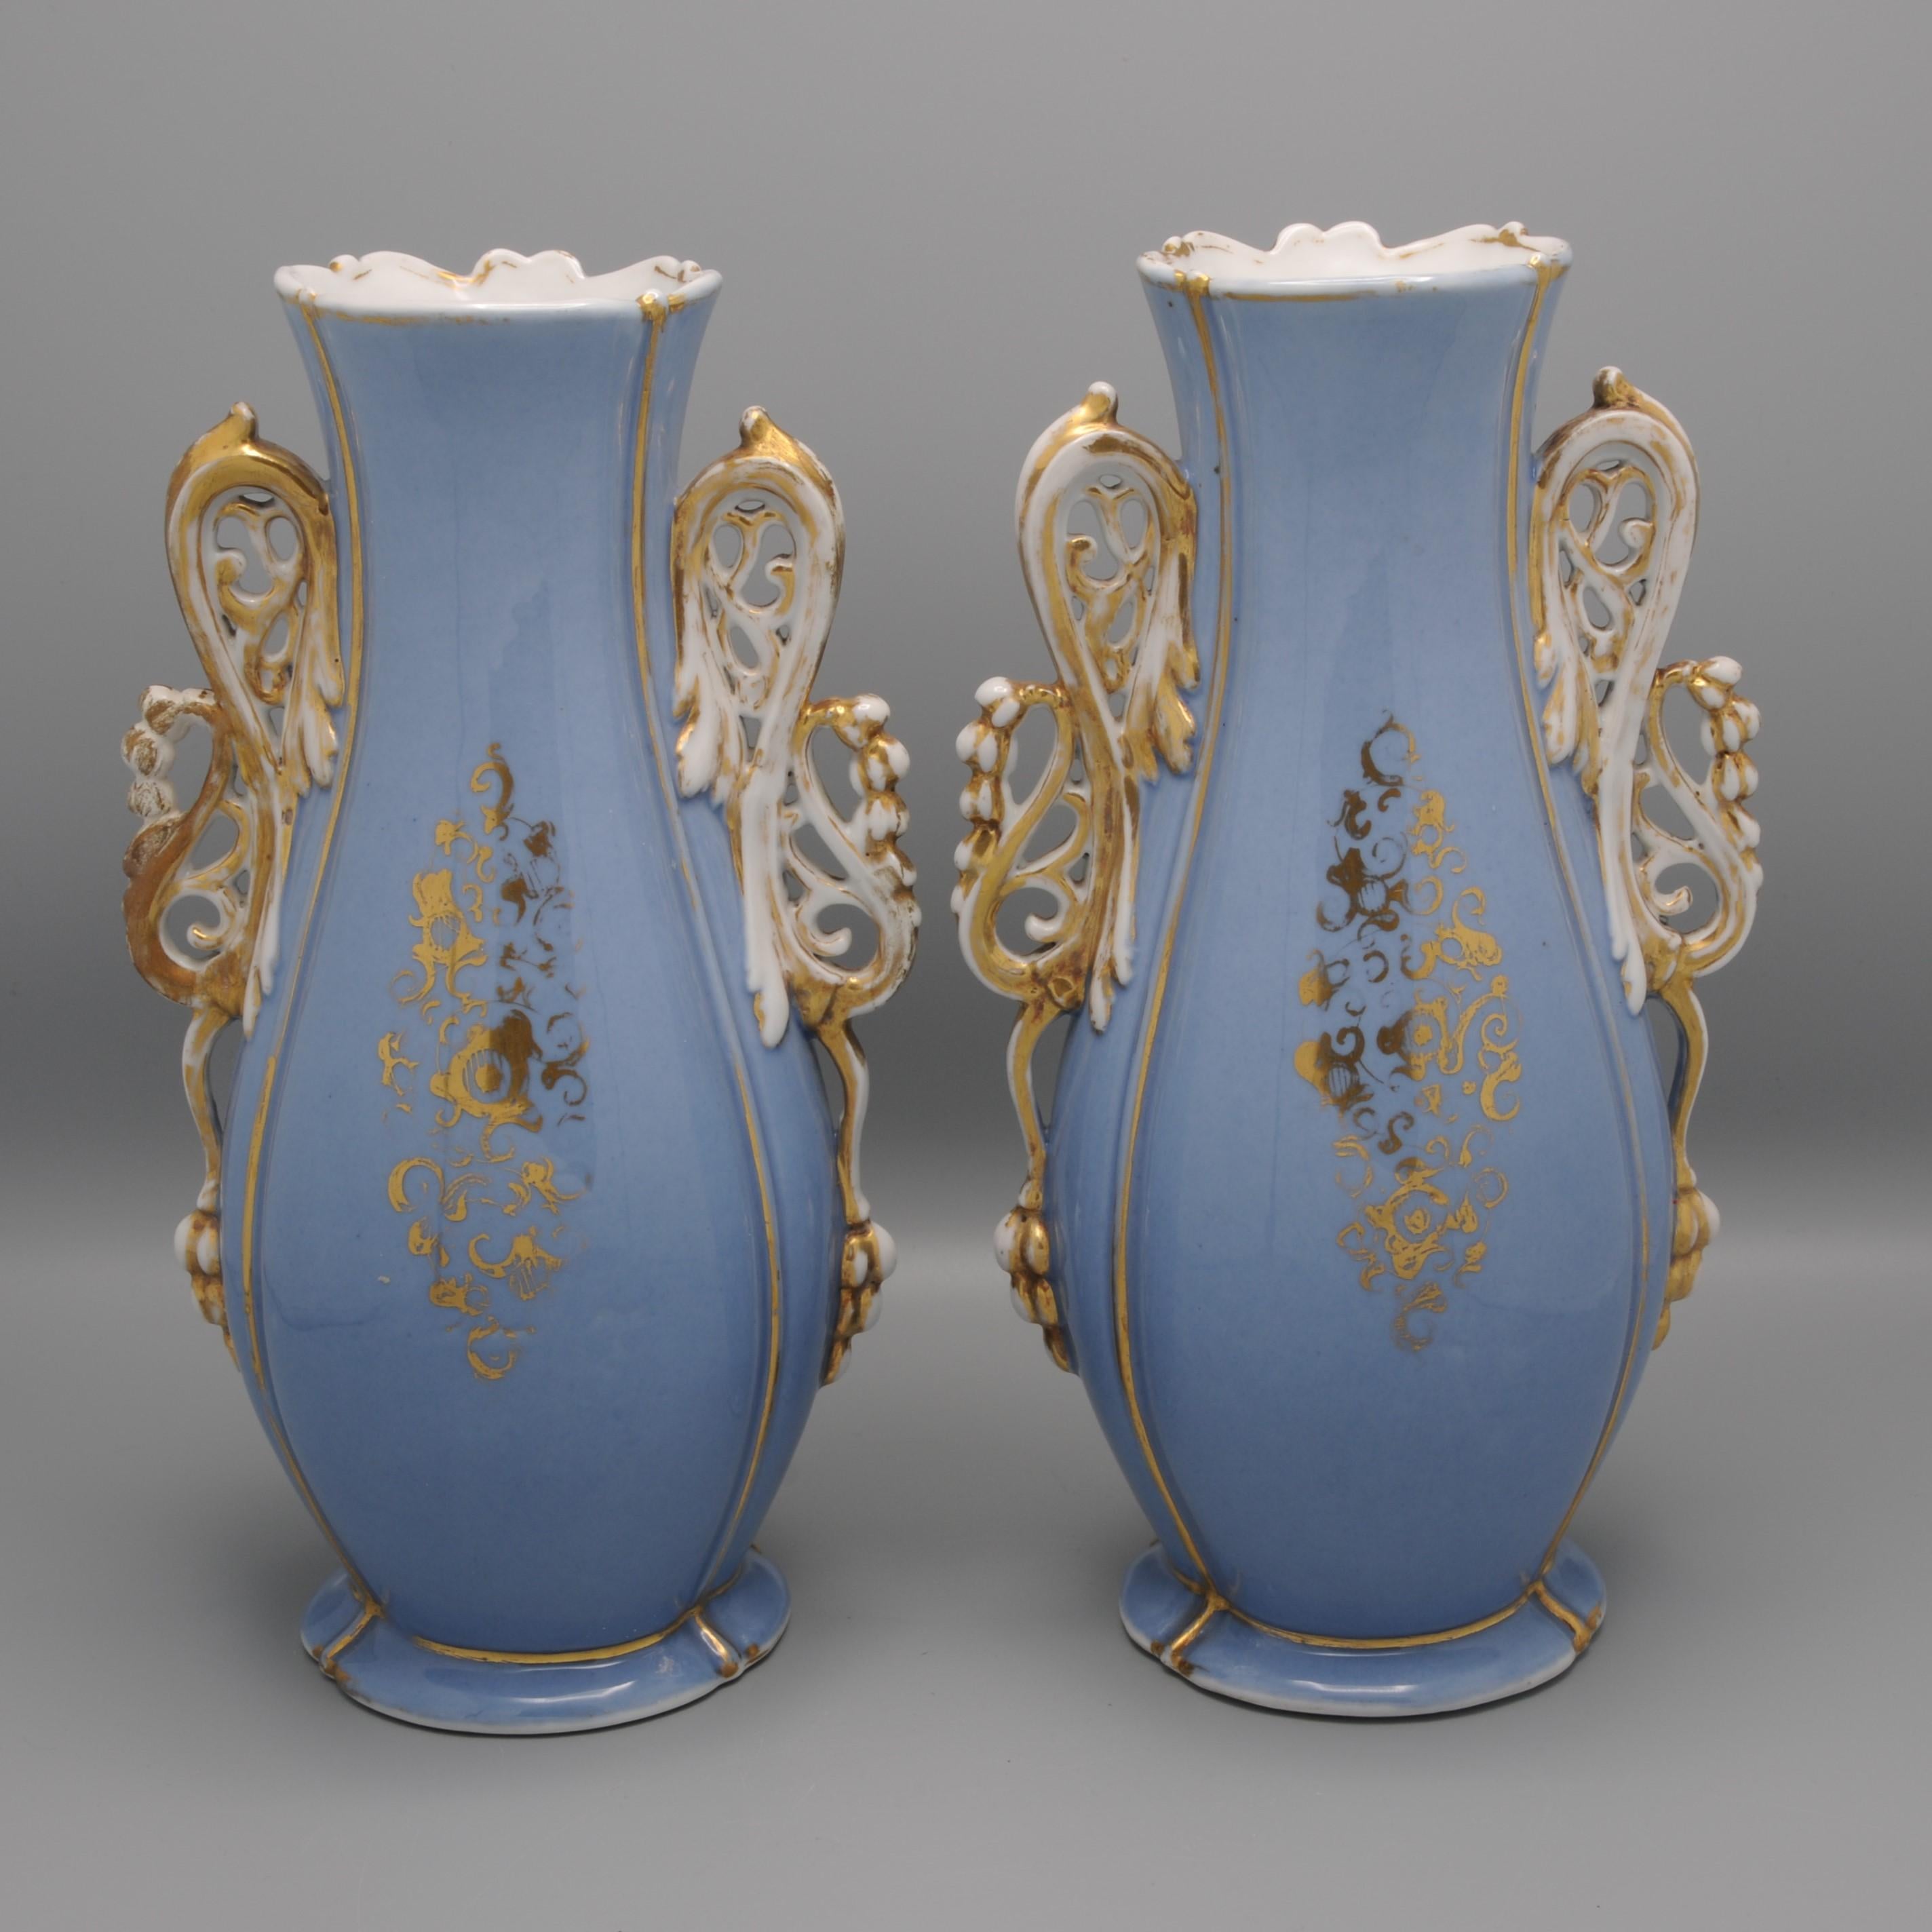 Vieux Paris / Vieux Bruxelles - Pair of Rococo Revival Vases For Sale 2